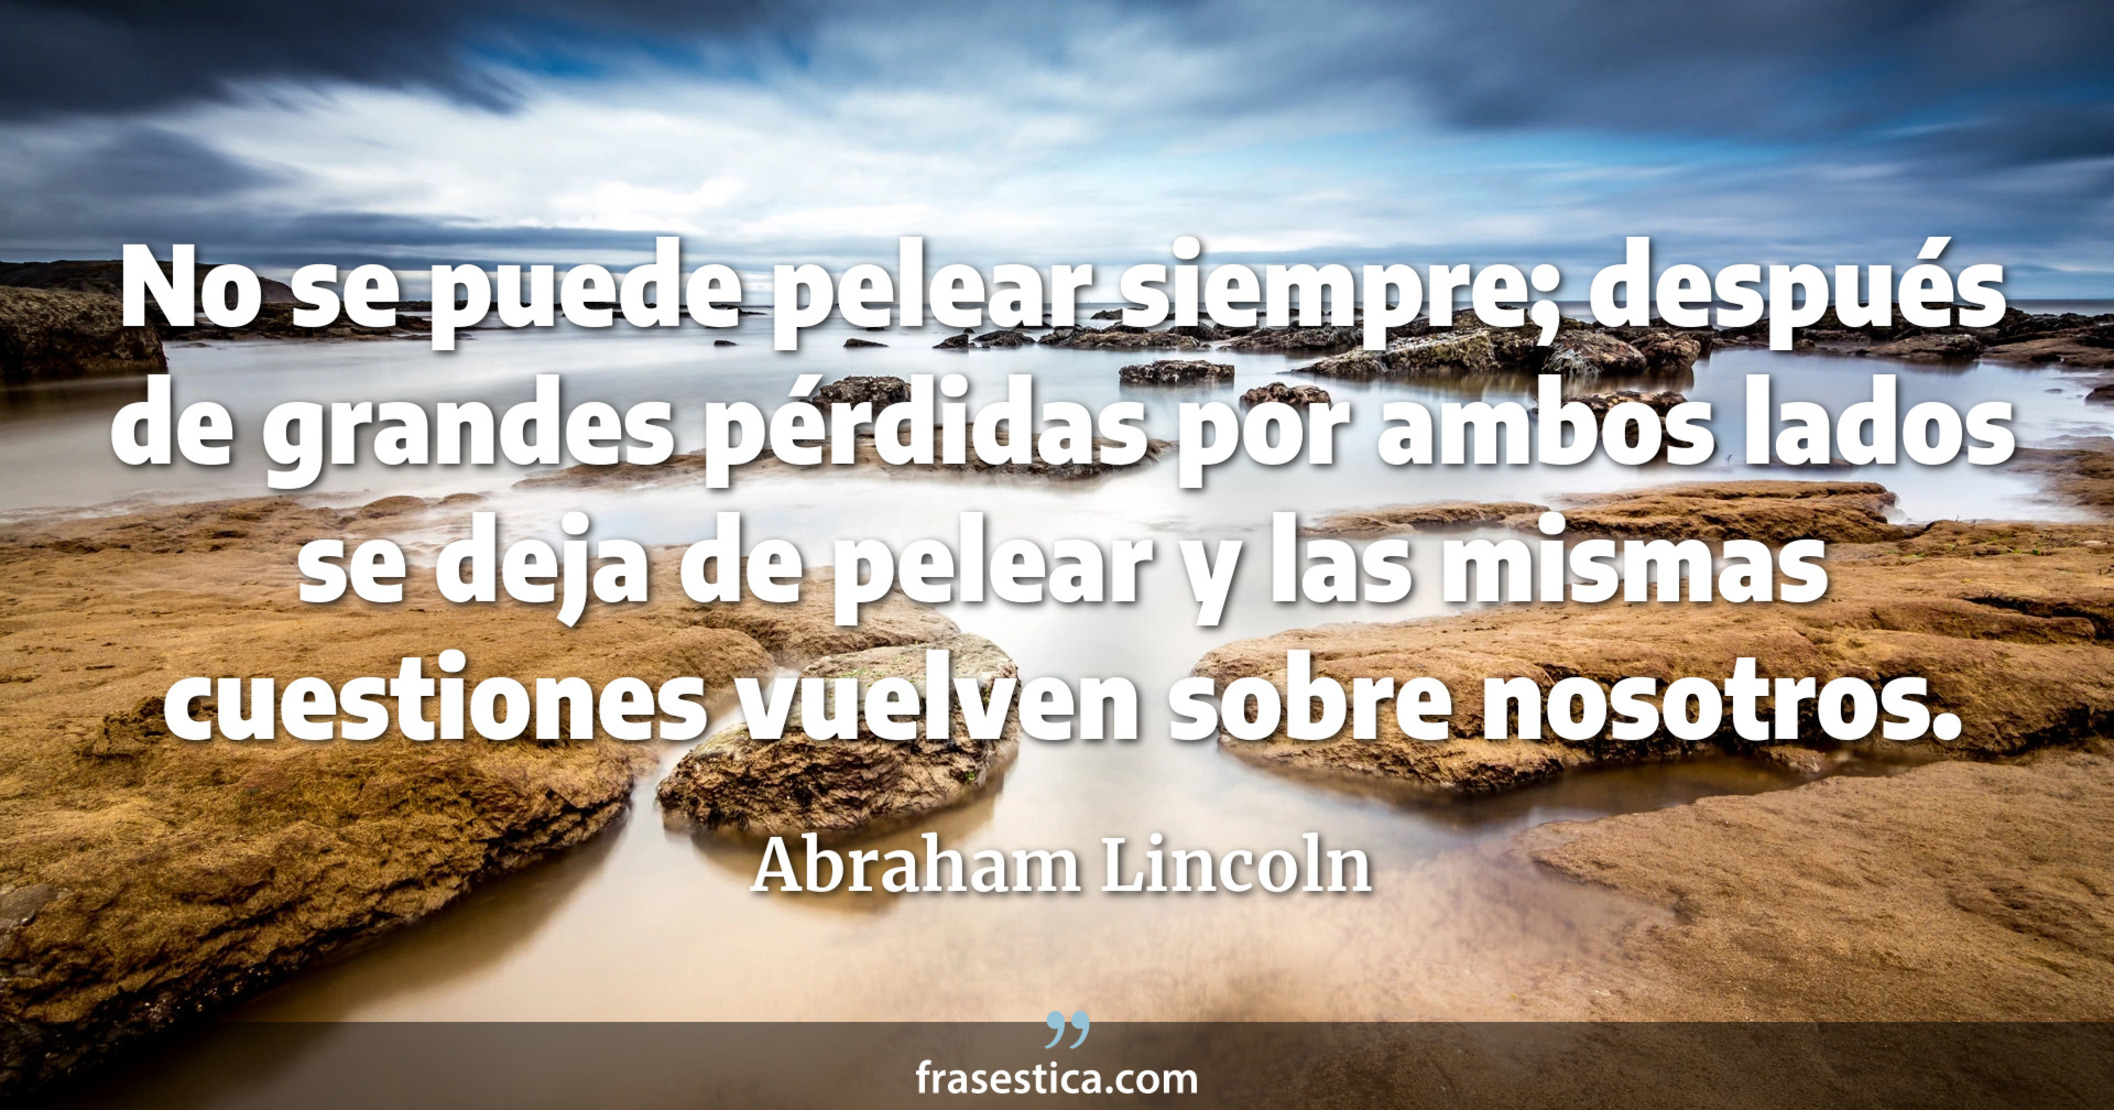 No se puede pelear siempre; después de grandes pérdidas por ambos lados se deja de pelear y las mismas cuestiones vuelven sobre nosotros. - Abraham Lincoln